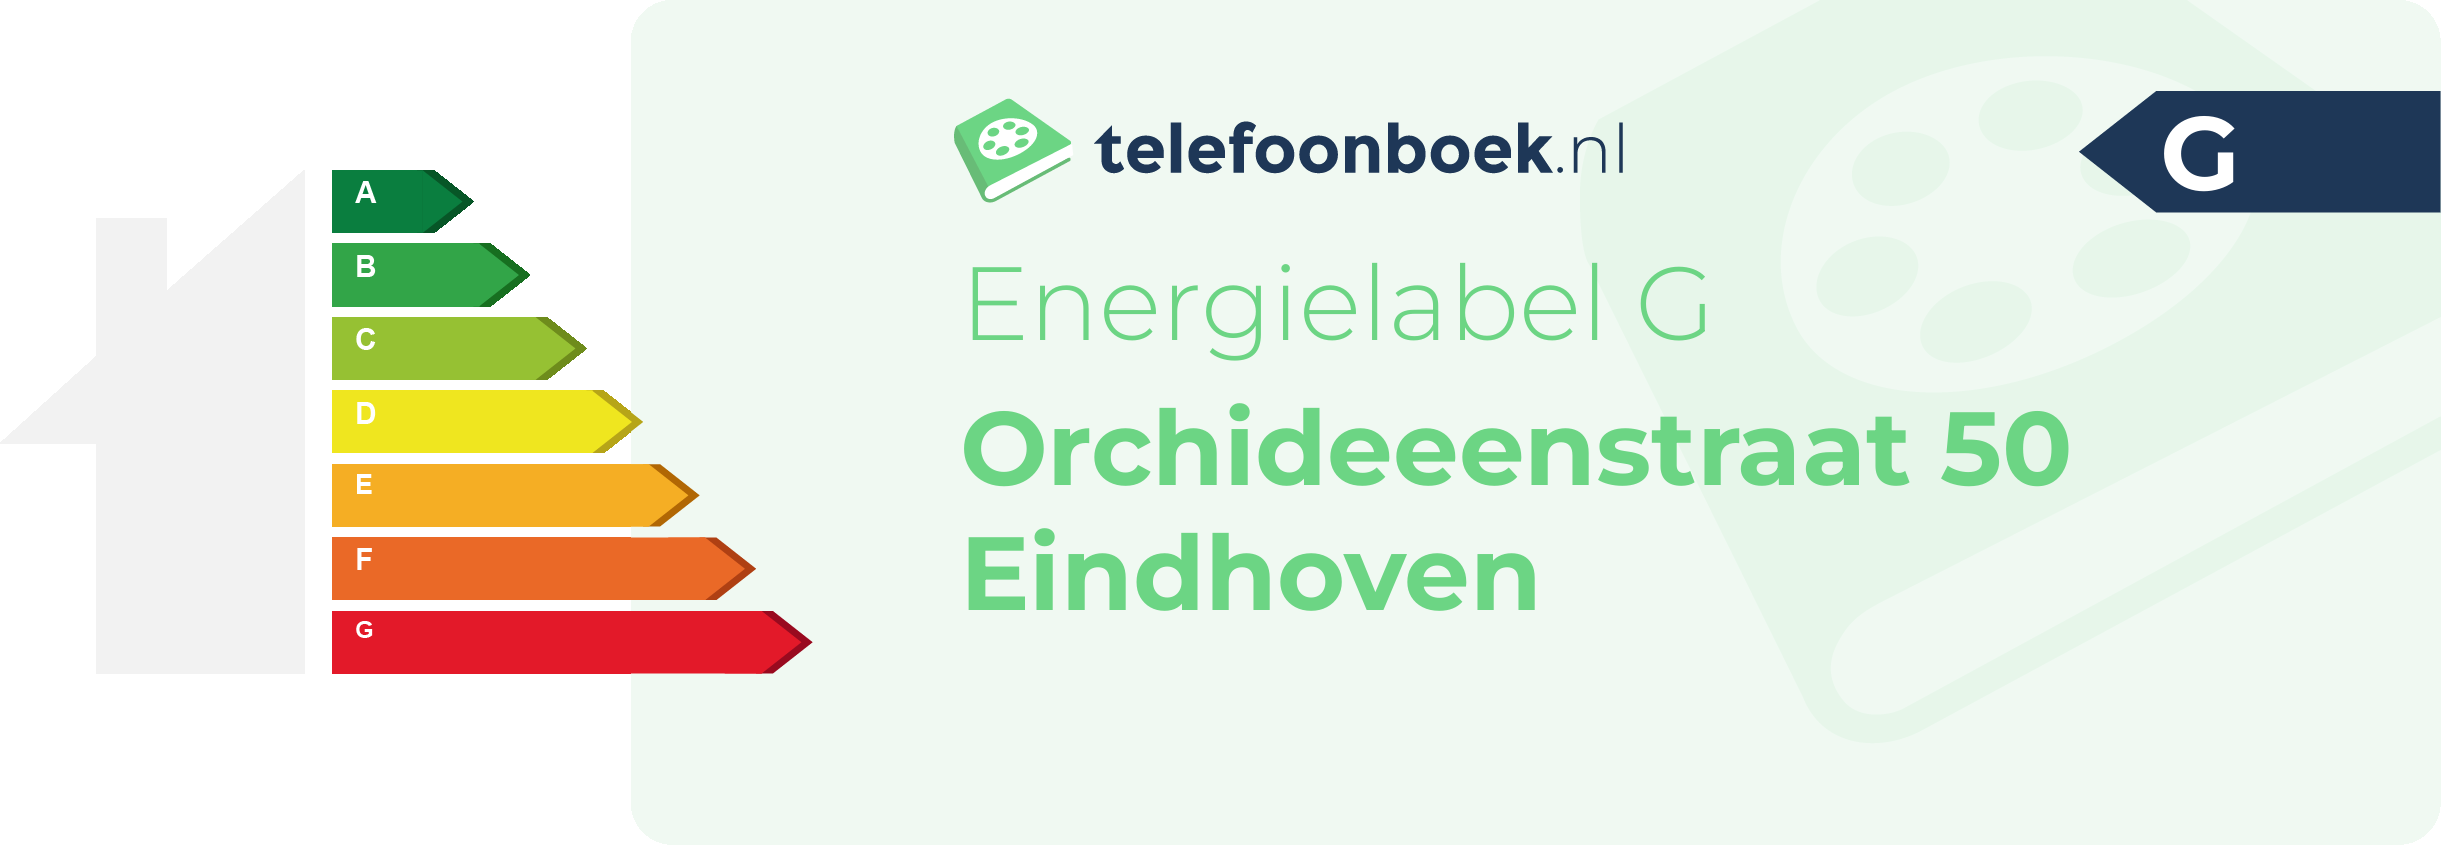 Energielabel Orchideeenstraat 50 Eindhoven